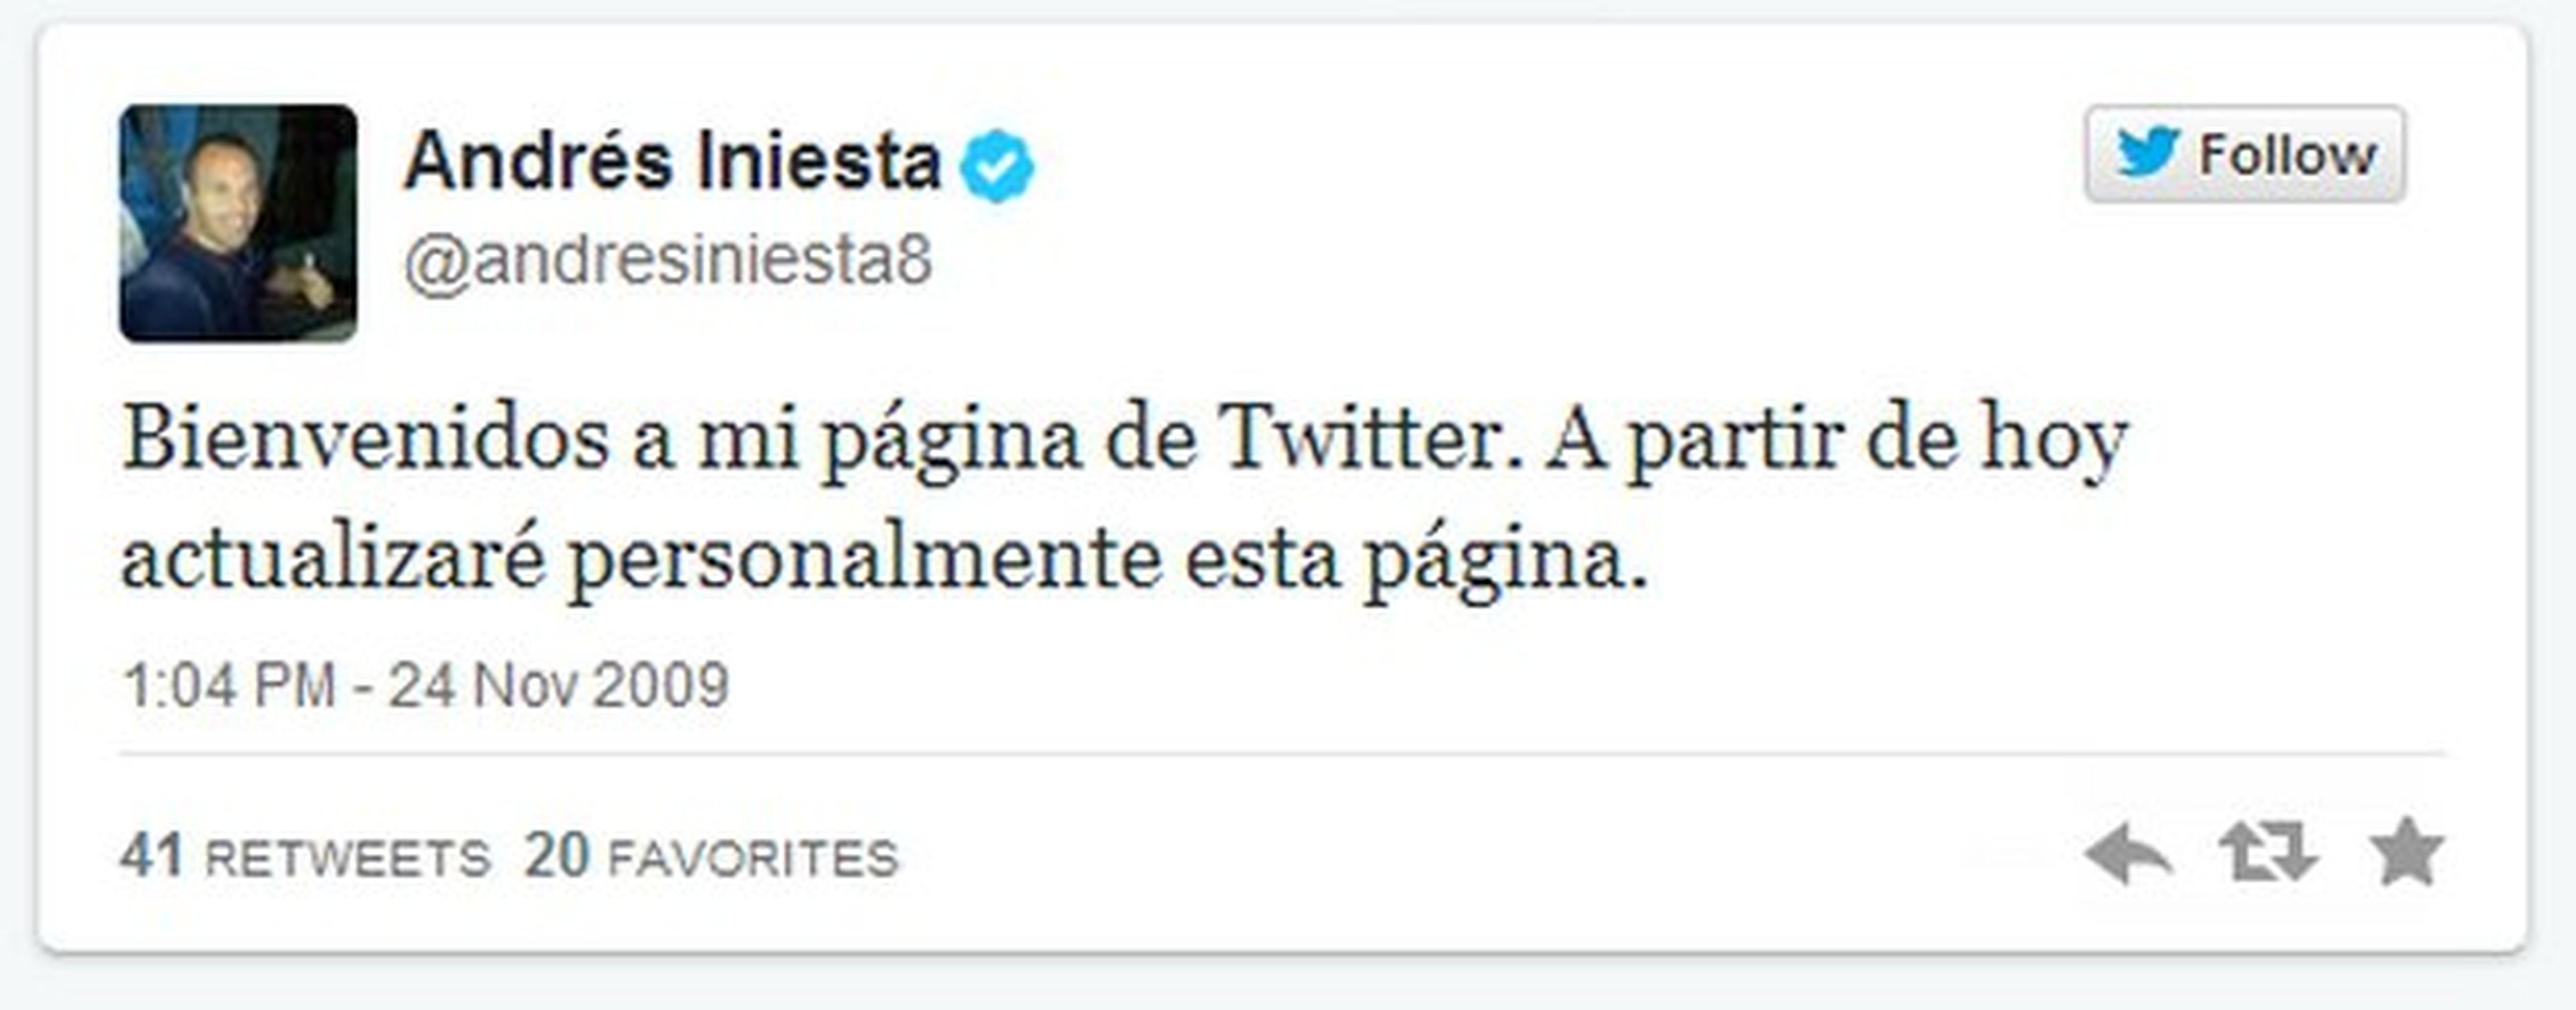 Primer tweet Andrés Iniesta